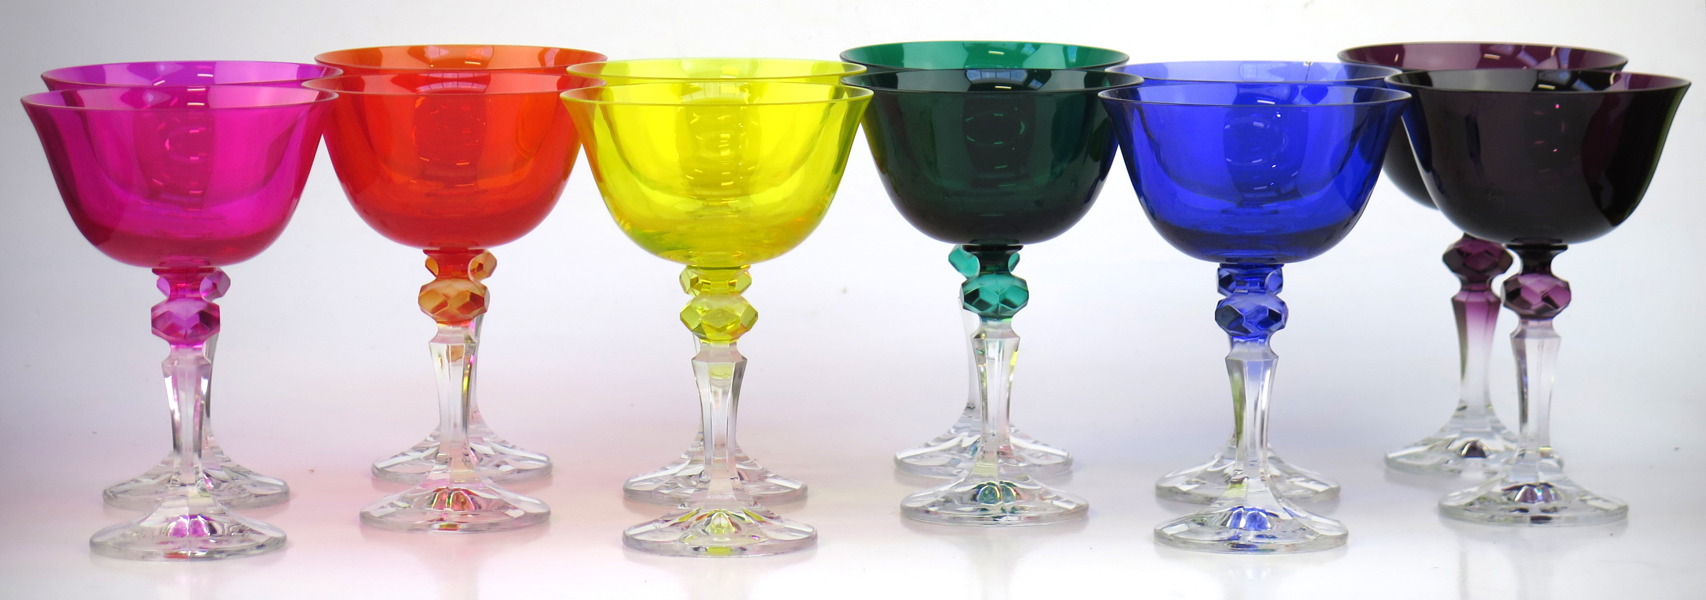 Coctailglas, 12 st, olikfärgade cuppor, framstår oanvända i originalförpackning, _18654a_8da23b38eafab9e_lg.jpeg